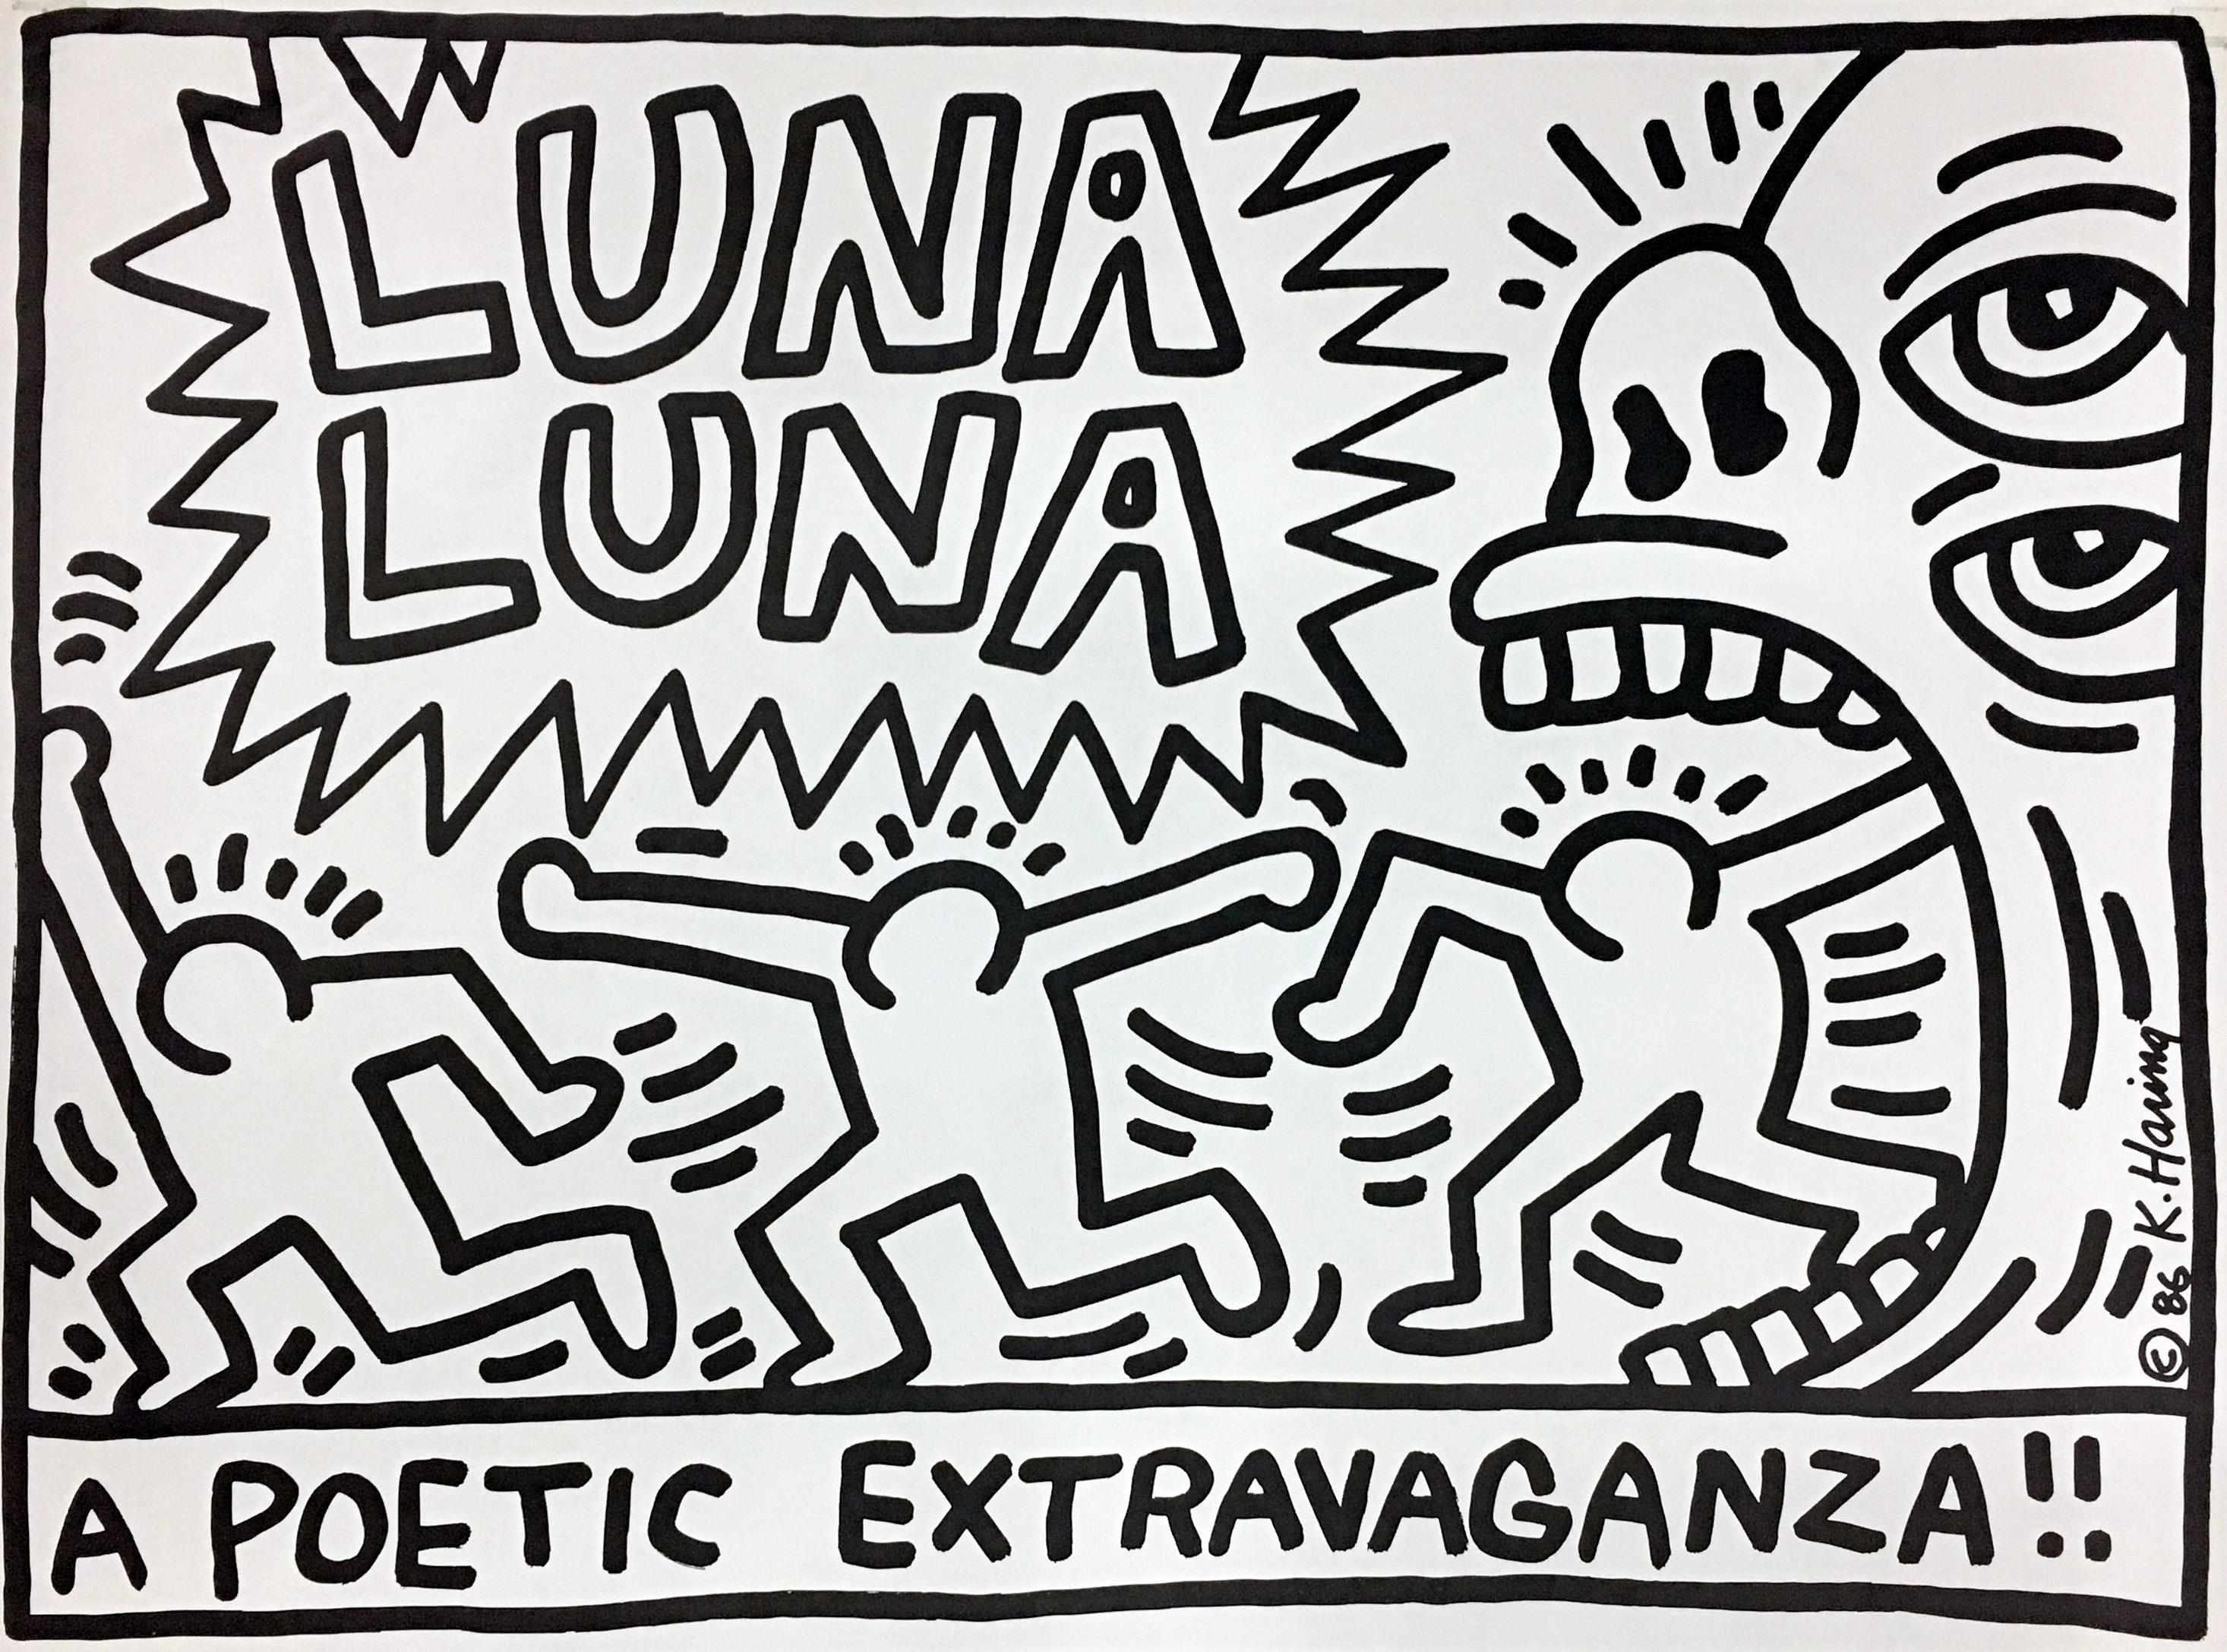 Luna Luna A Poetic Extravaganza!  2